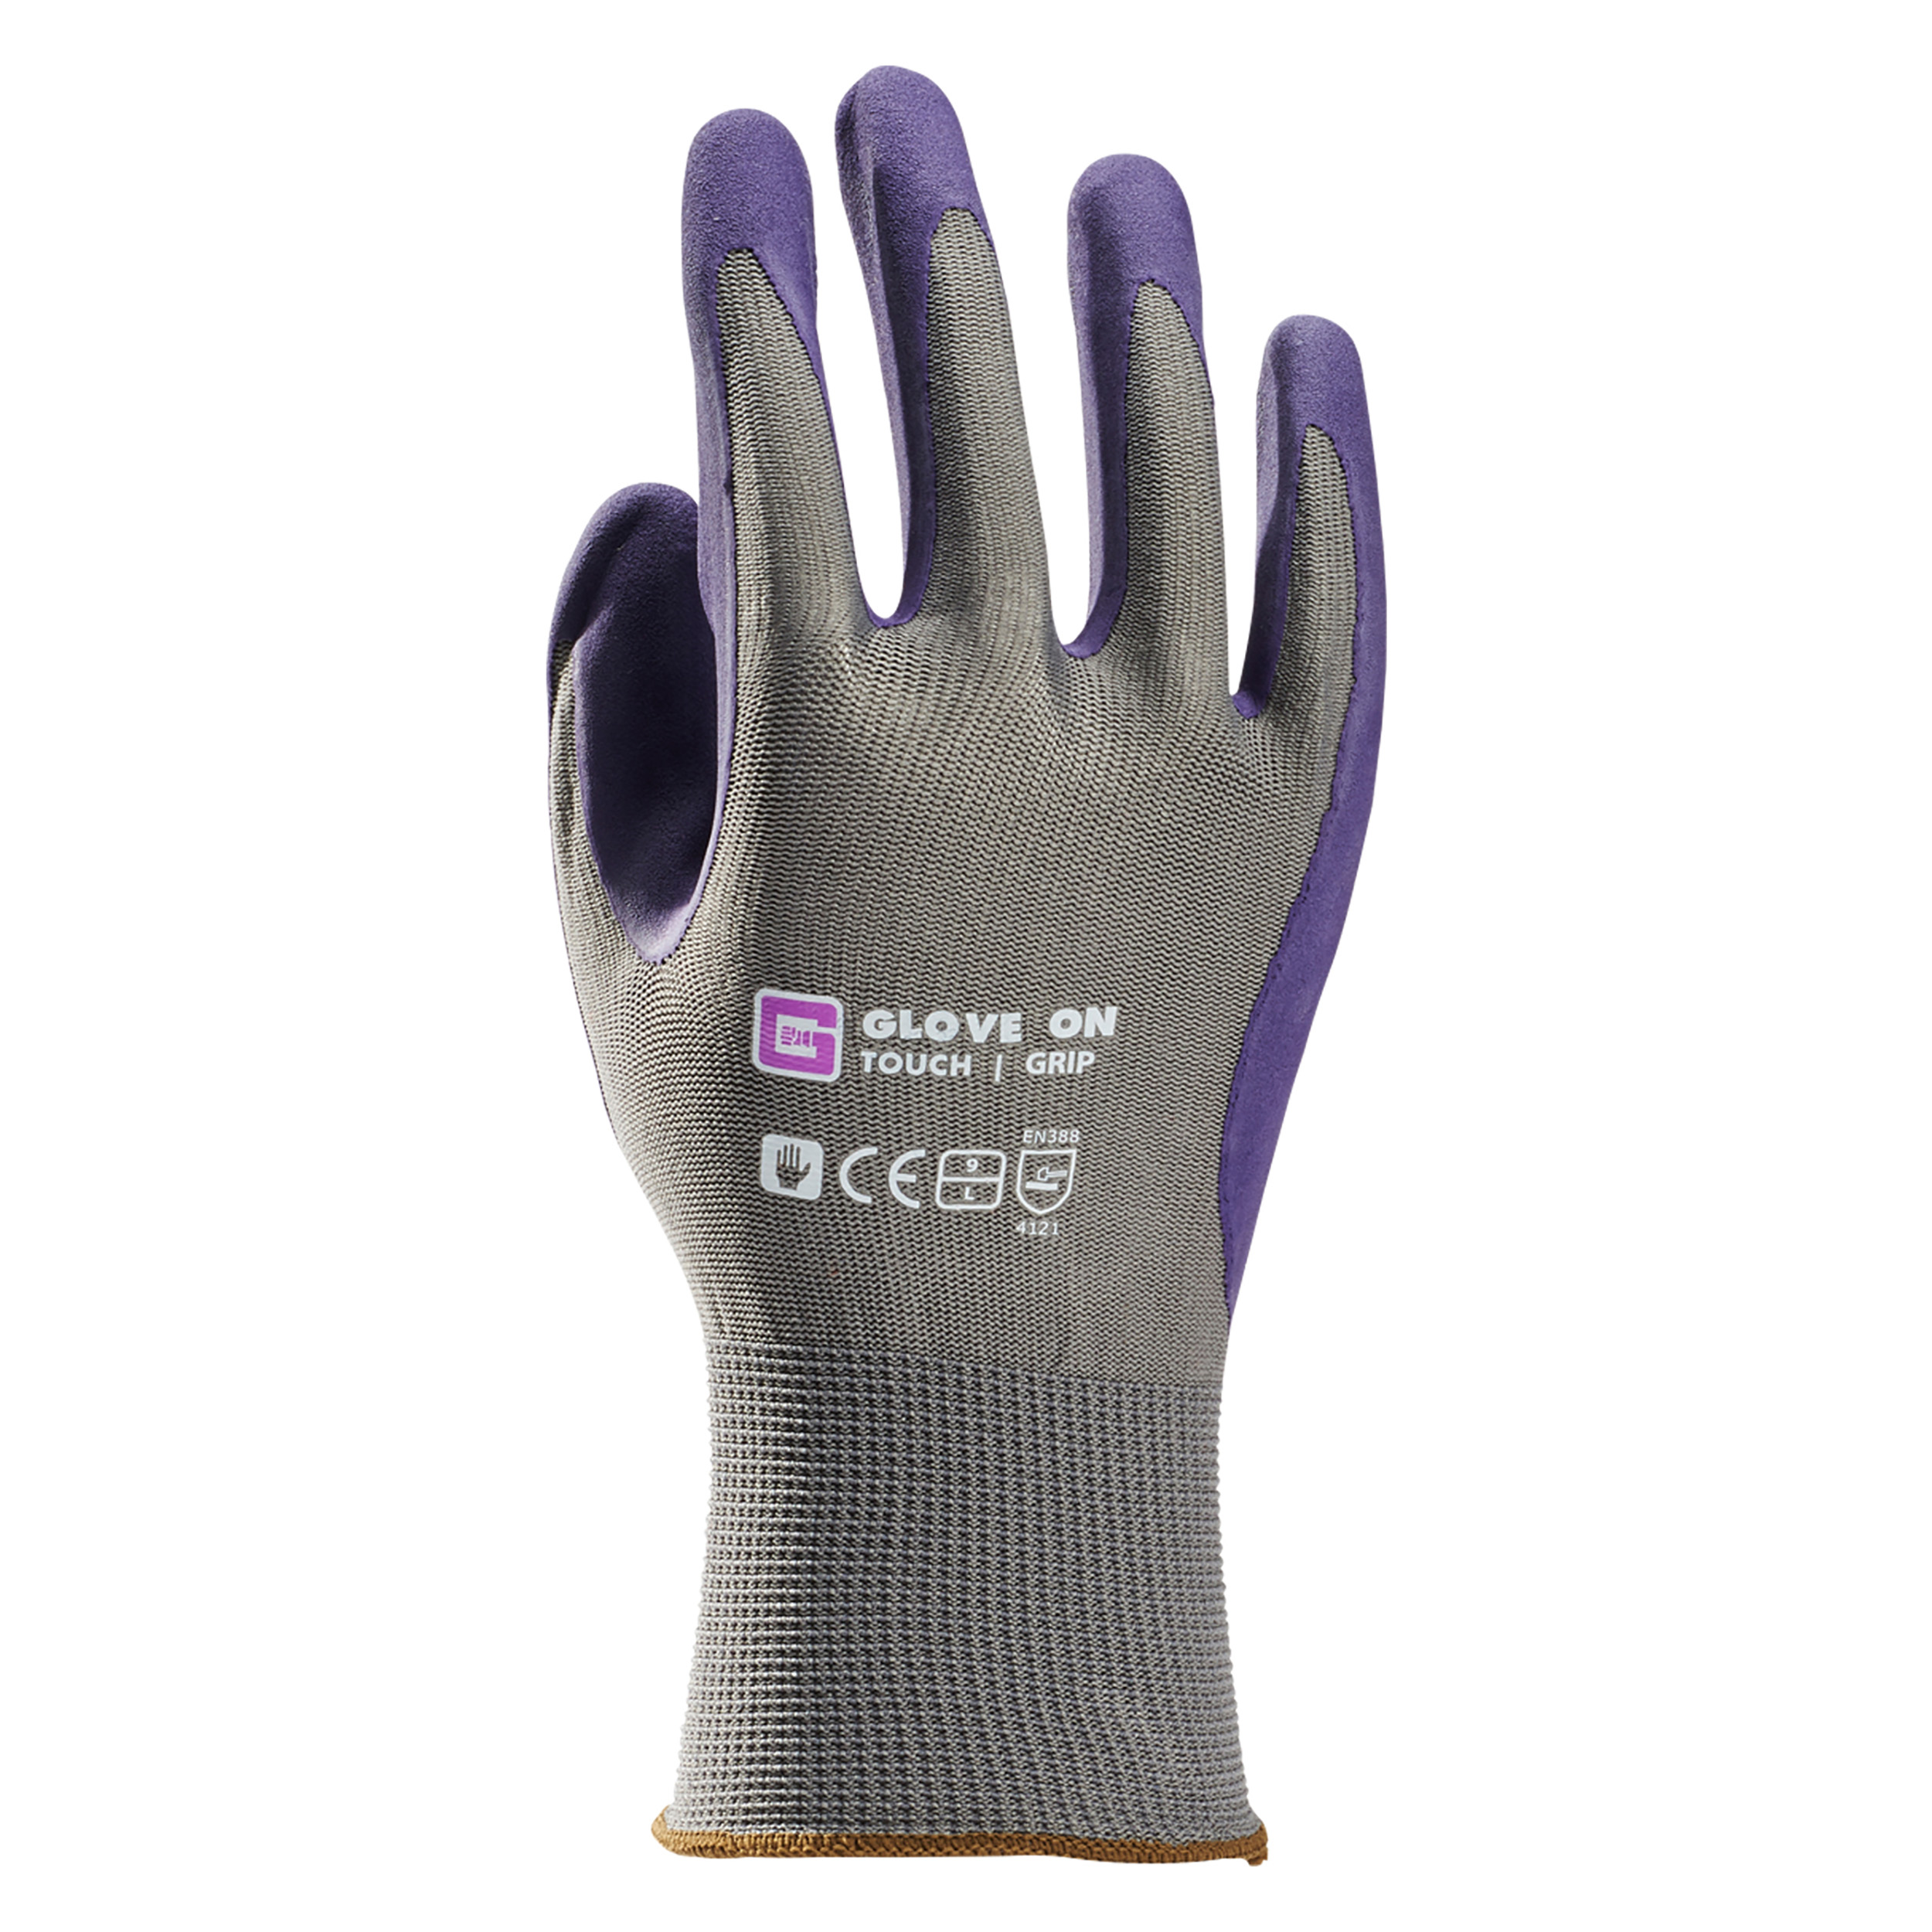 21.080.24 Glove On Touch werkhandschoen touch grip - XL